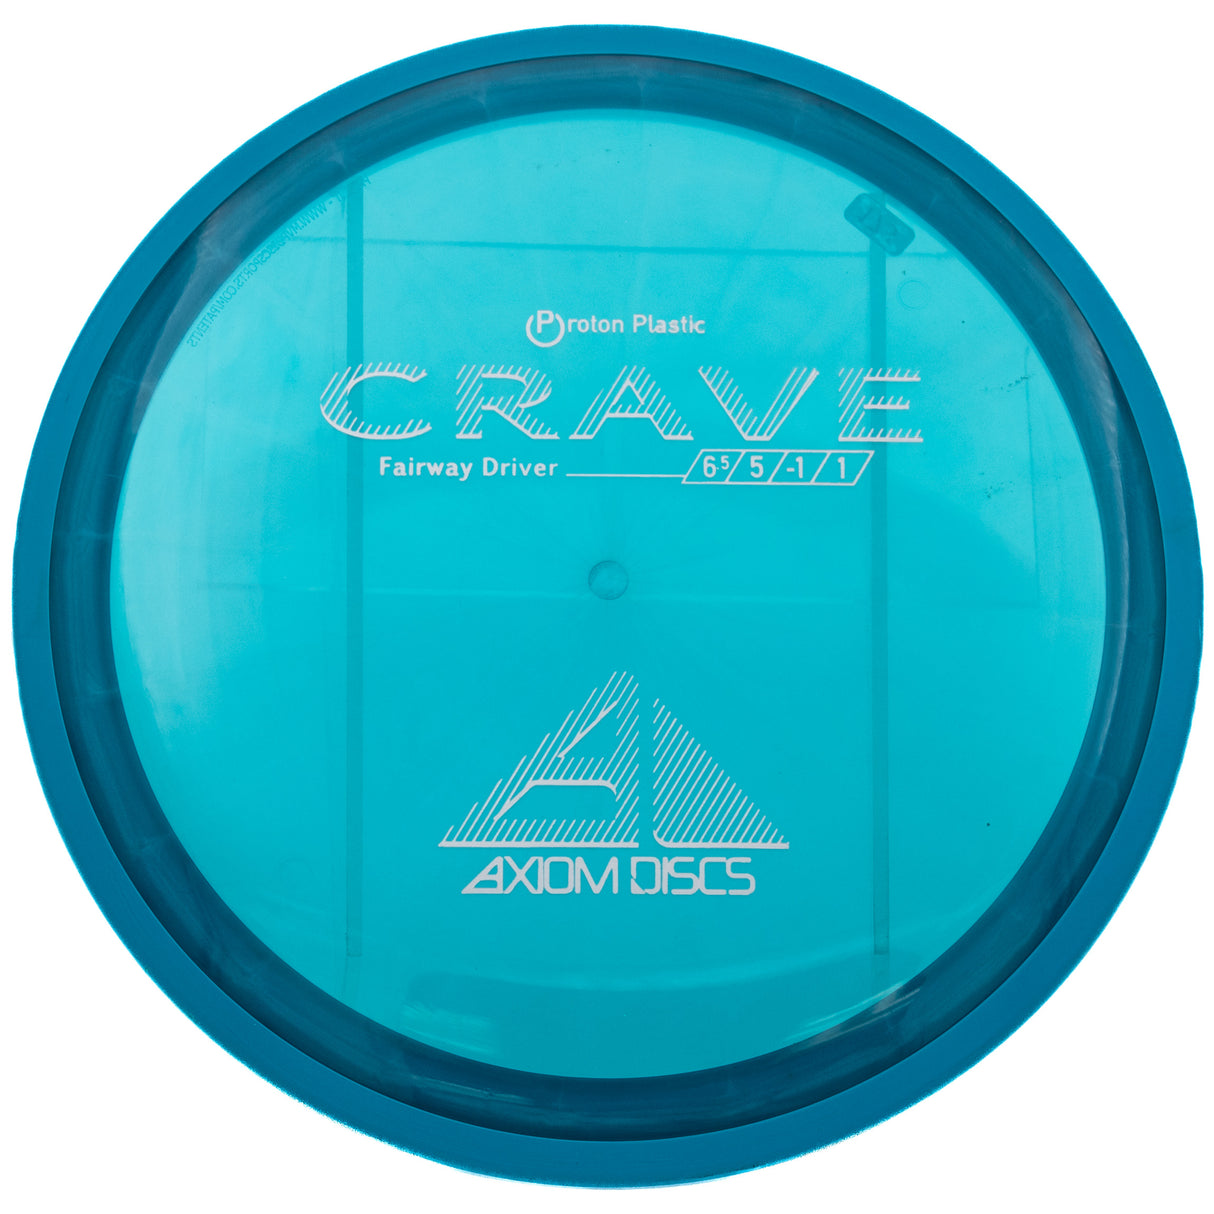 Axiom Crave - Proton 175g | Style 0001